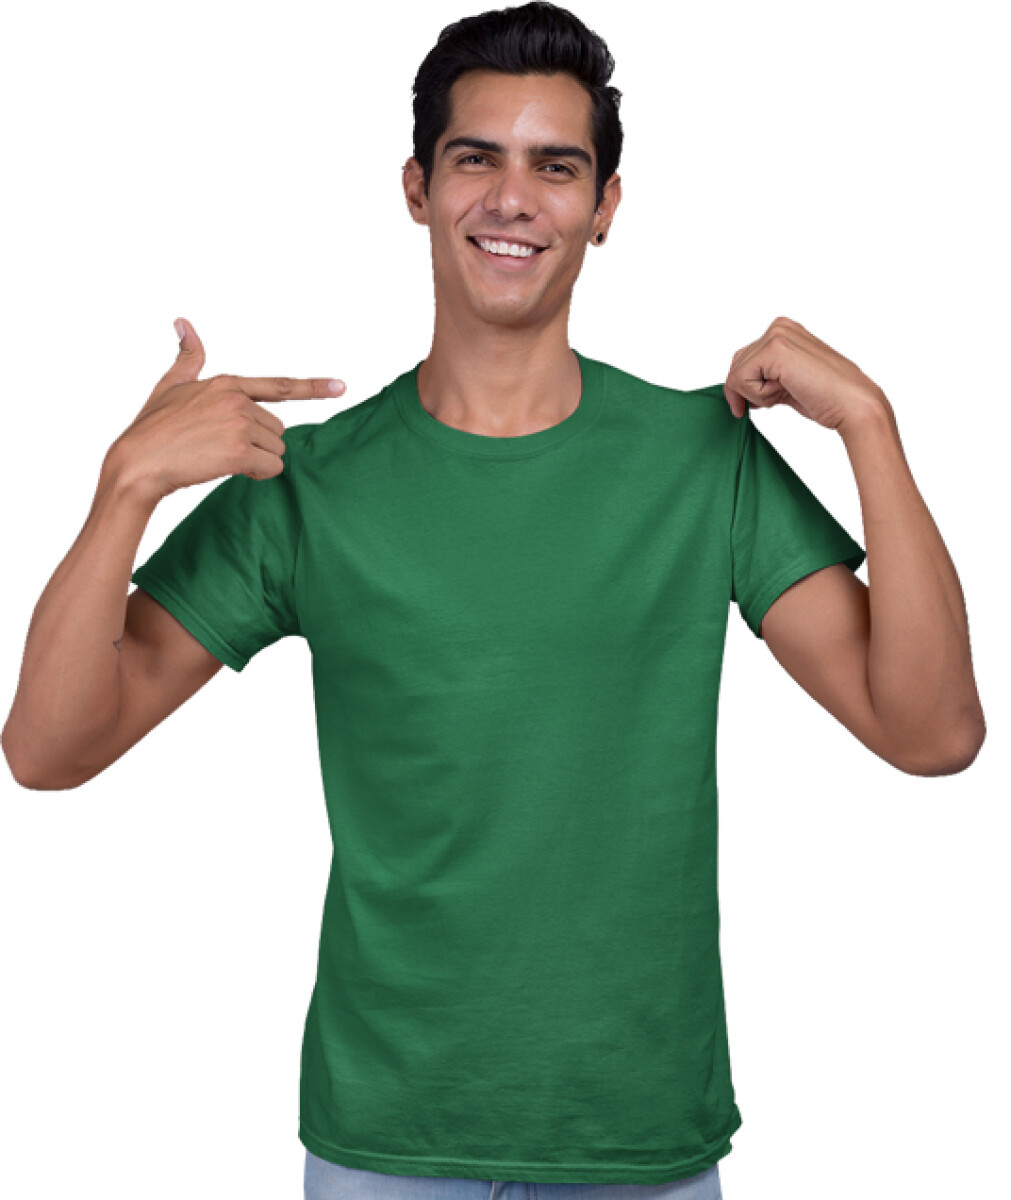 Camiseta a la base peso medio - Verde jade 